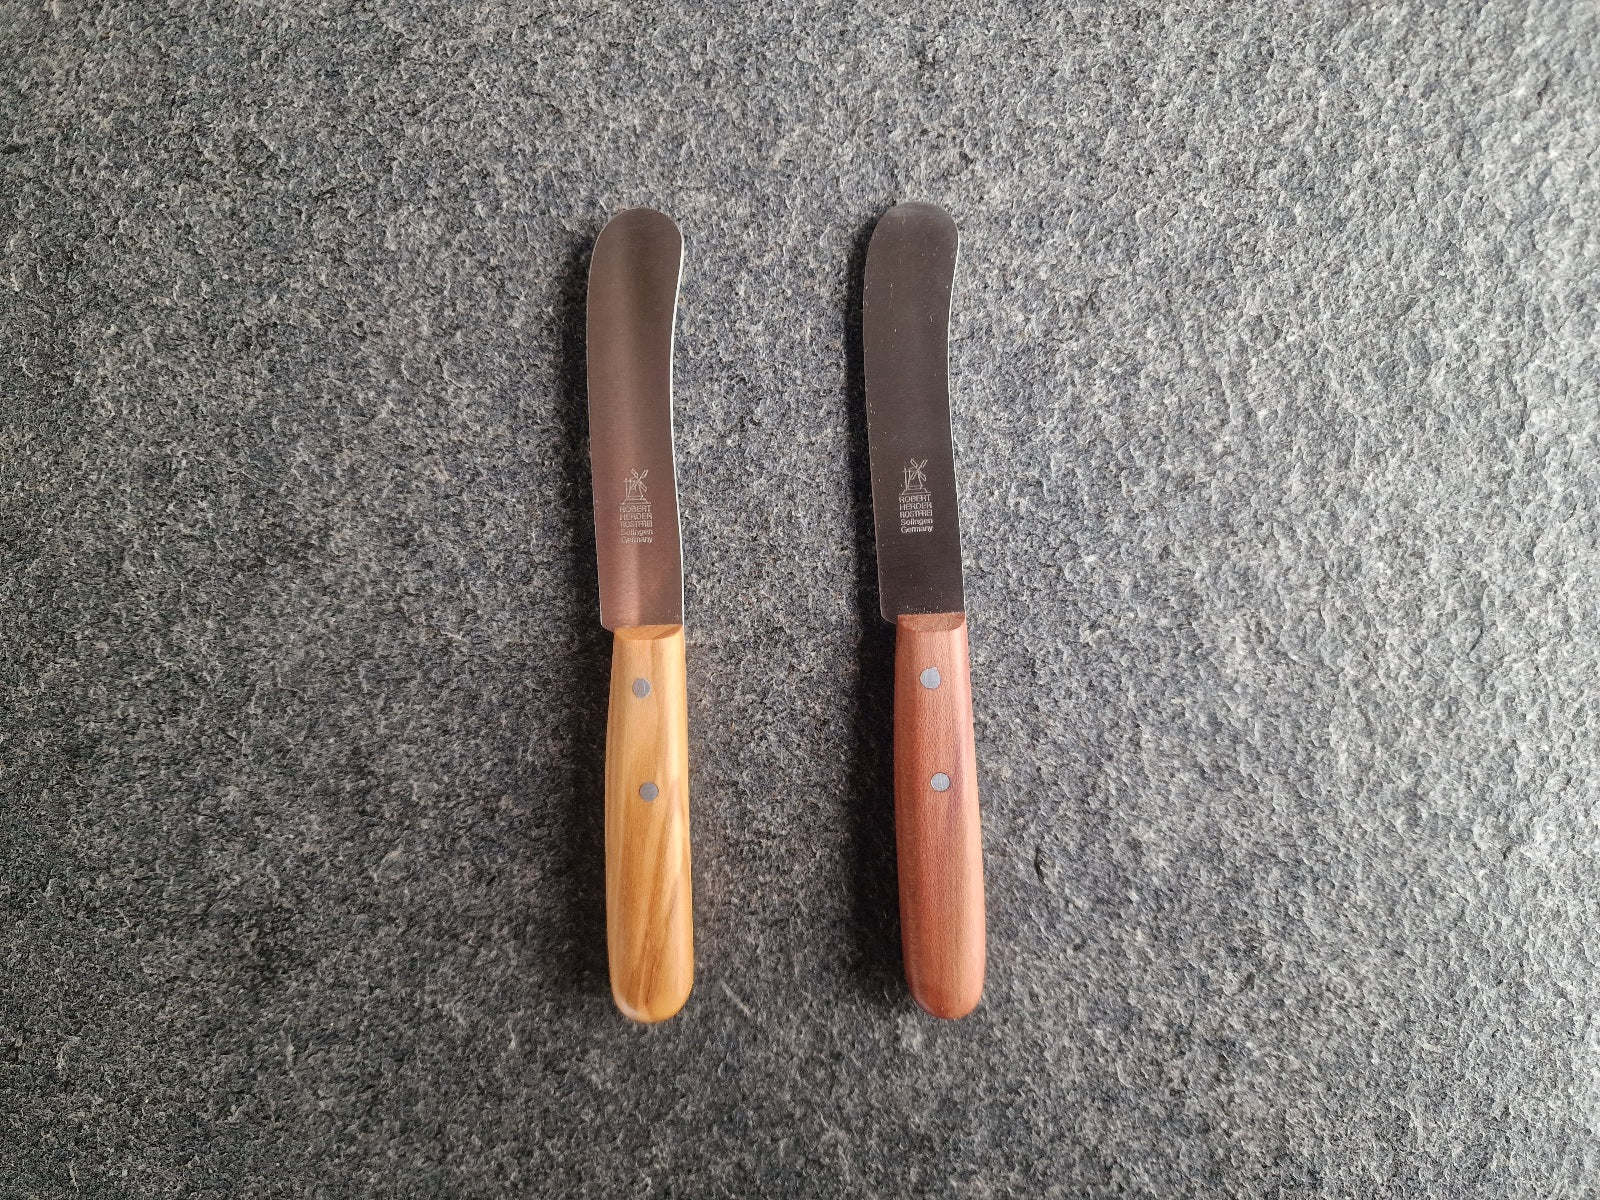 Zwei kleine Butter Buckels von Windmühlenmesser. Links mit Olive-Griff, rechts mit Pflaume-Griff.